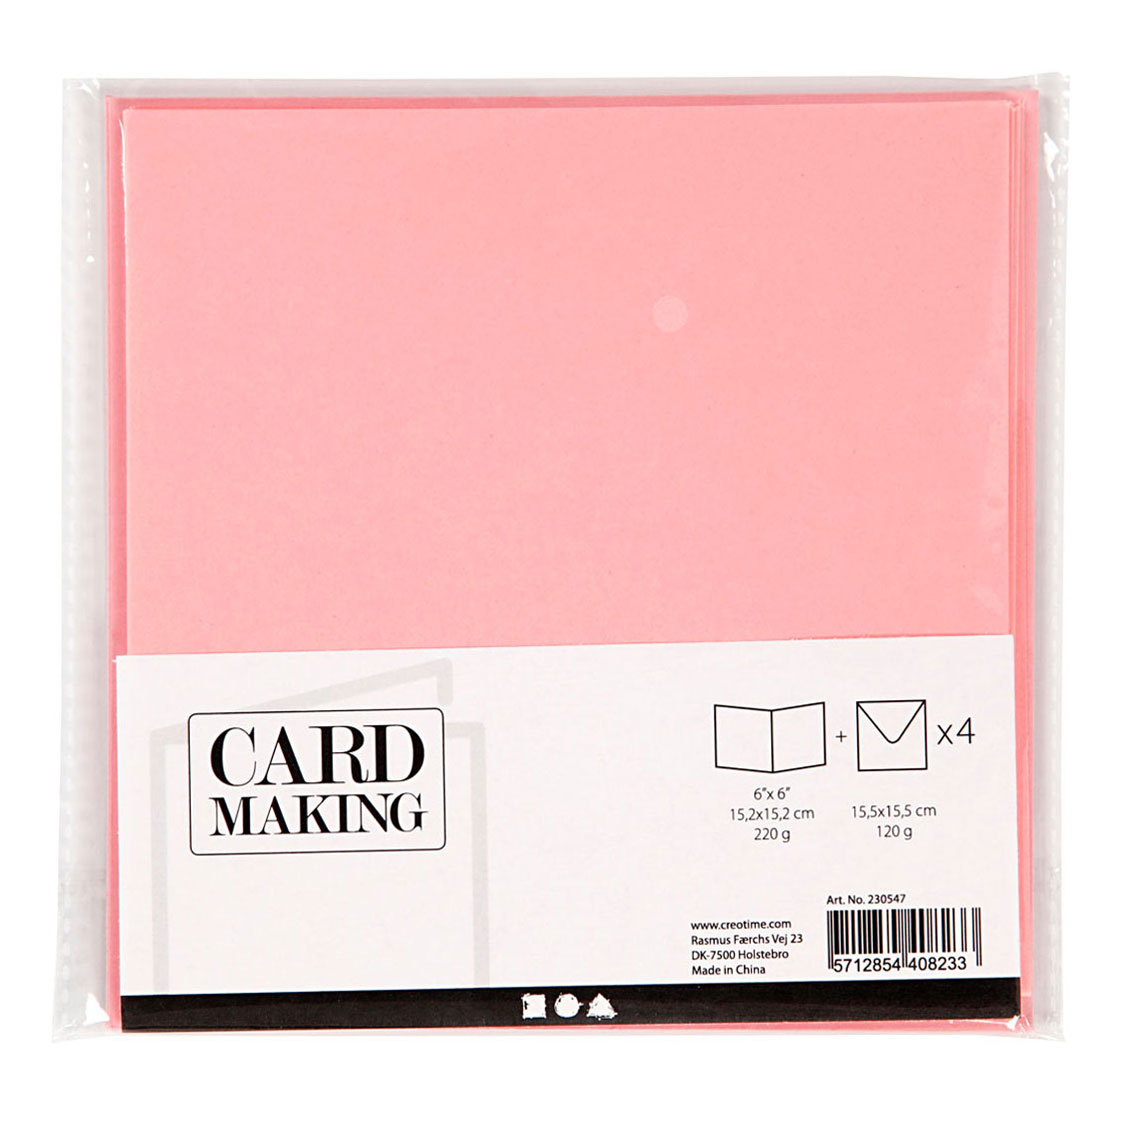 Karten und Umschläge Pink, 4 Stk.